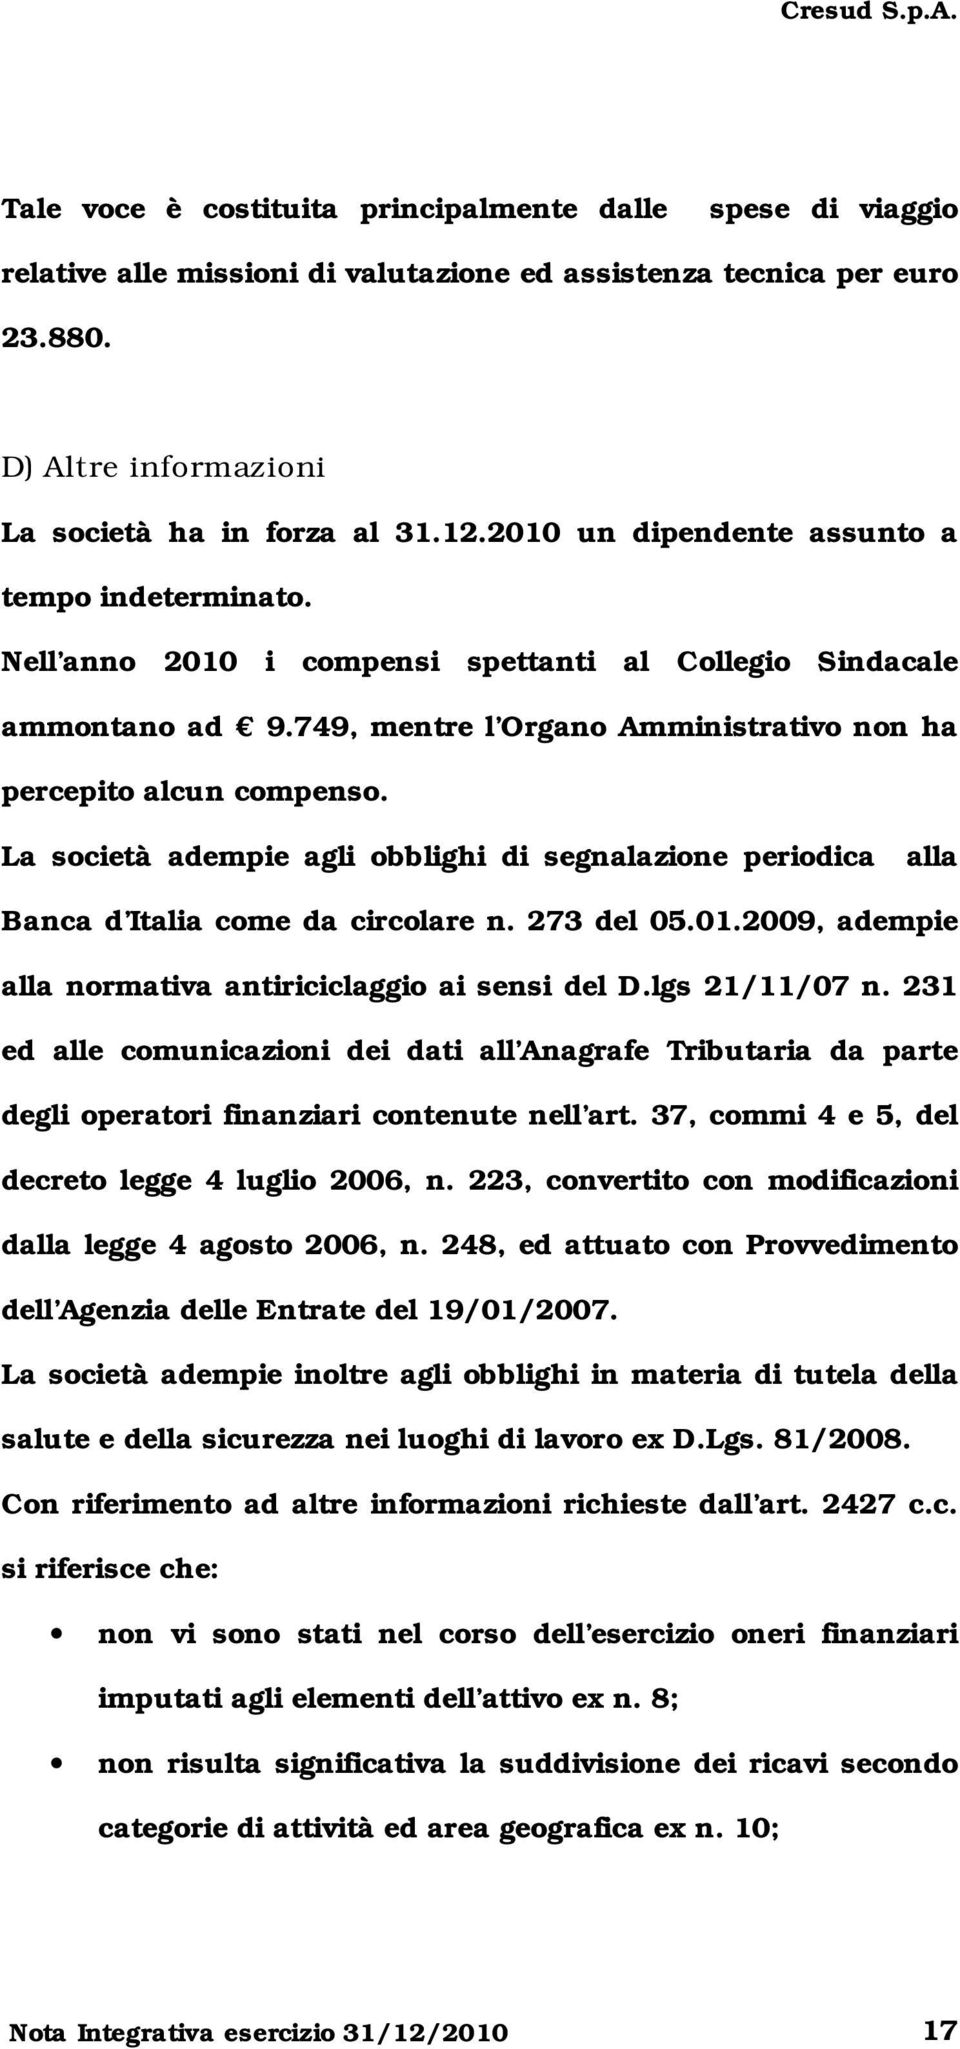 La società adempie agli obblighi di segnalazione periodica alla Banca d Italia come da circolare n. 273 del 05.01.2009, adempie alla normativa antiriciclaggio ai sensi del D.lgs 21/11/07 n.